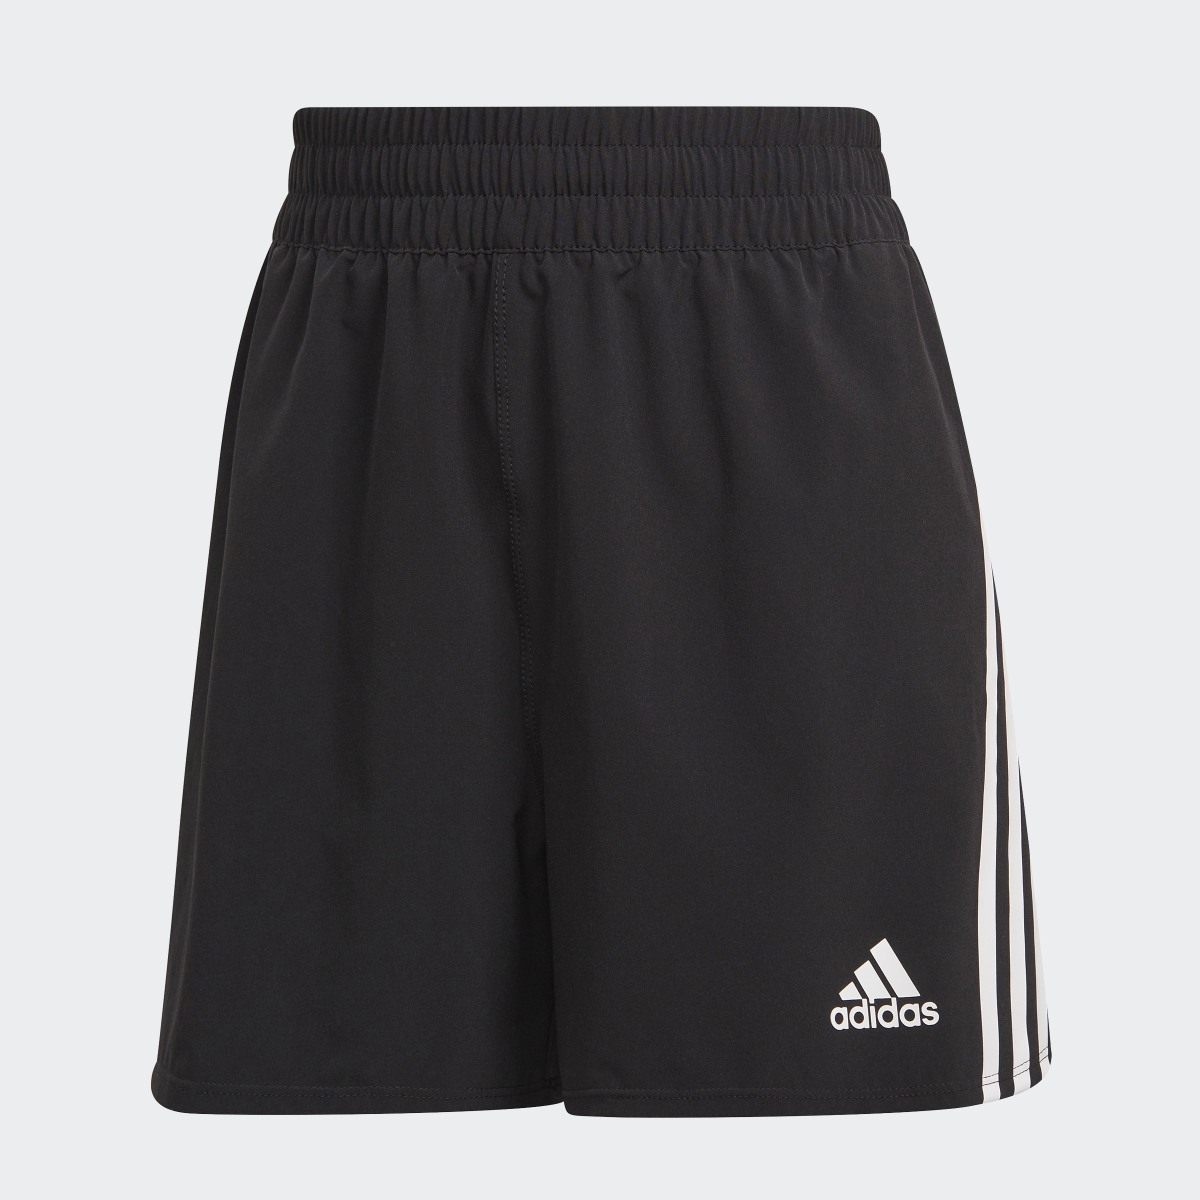 Adidas Train Icons 3-Streifen Woven Shorts. 4